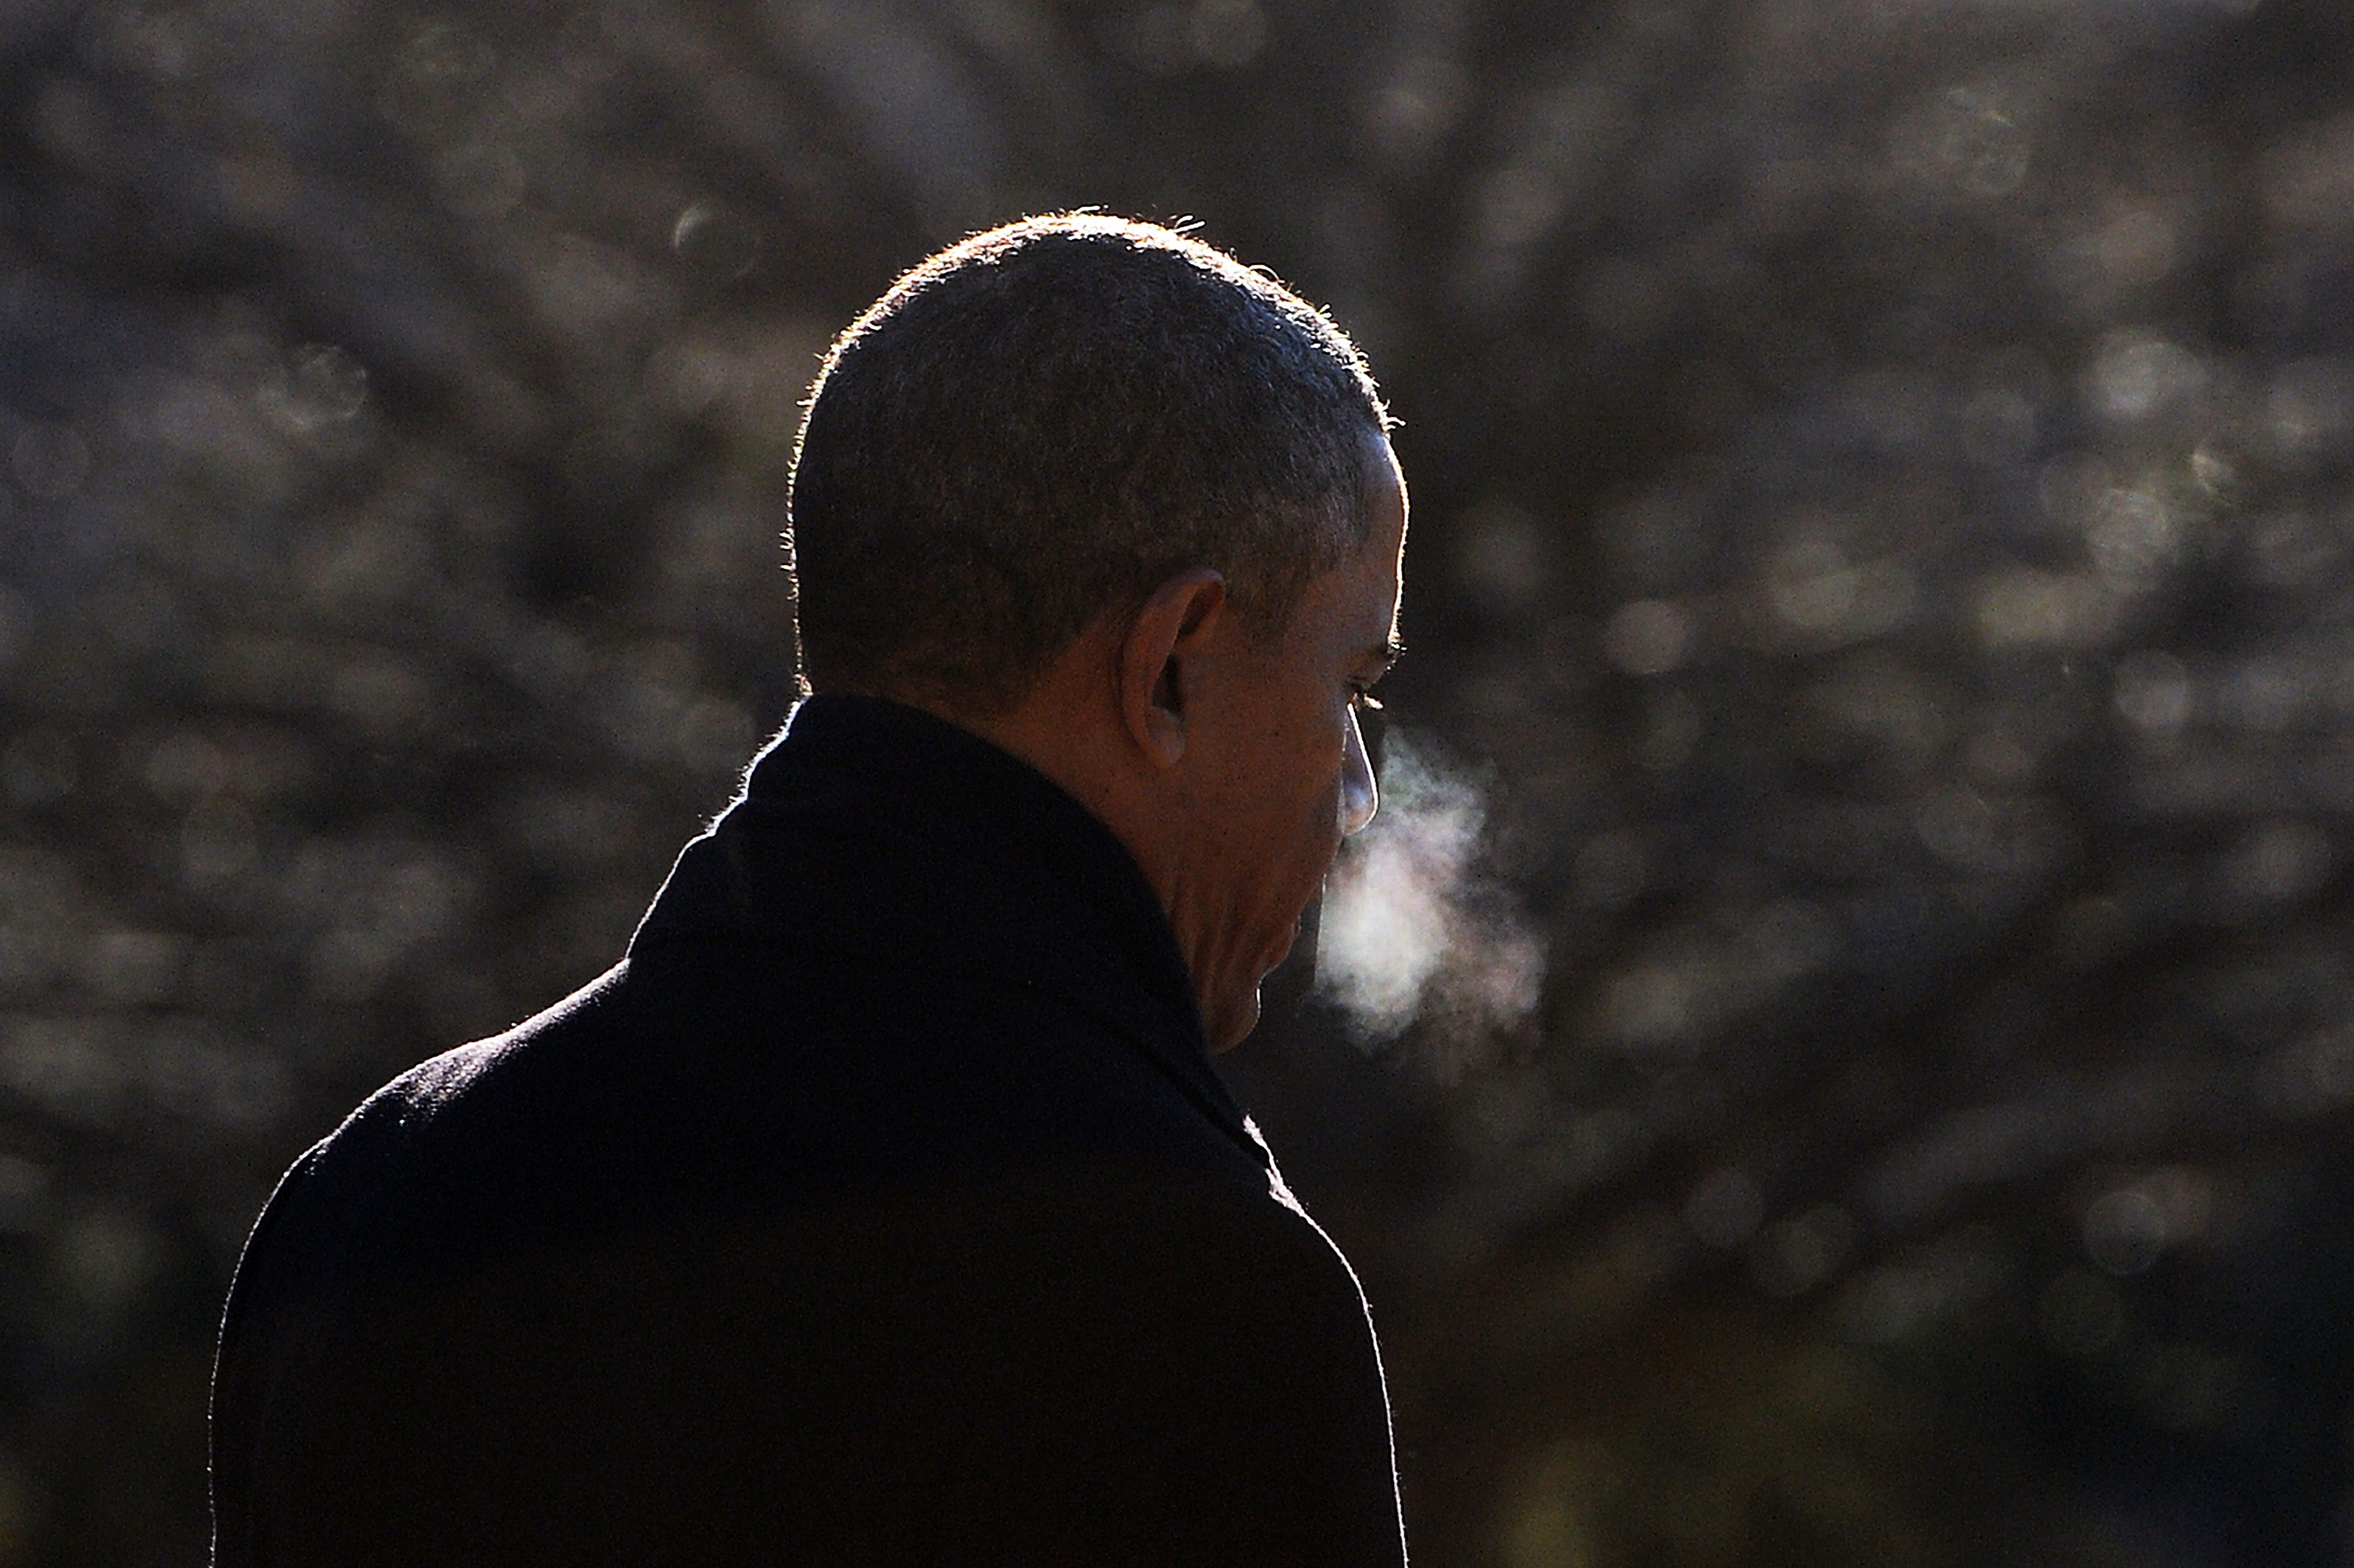 ¿El Presidente sigue fumando? Aquí Barack Obama camina durante una mañana muy fría para abordar el Marine One al salir de la Casa Blanca. (Getty)